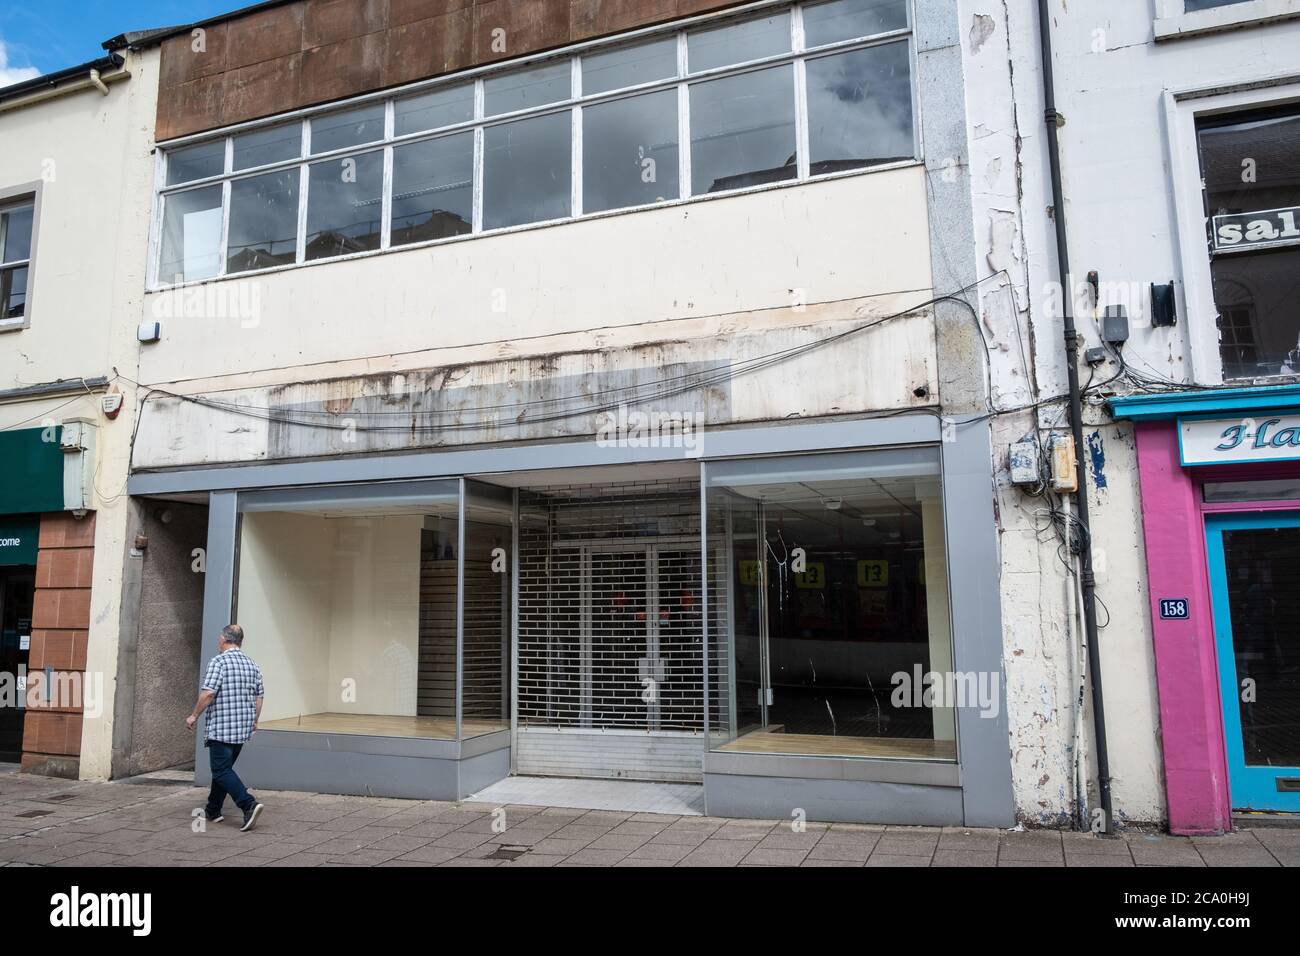 Das Schreibwarengeschäft Ryman in Dumfries, Schottland, schloss nach fast 25 Jahren in der Stadt. Der Laden schloss wegen Covid 19, konnte aber nicht wieder öffnen. Stockfoto